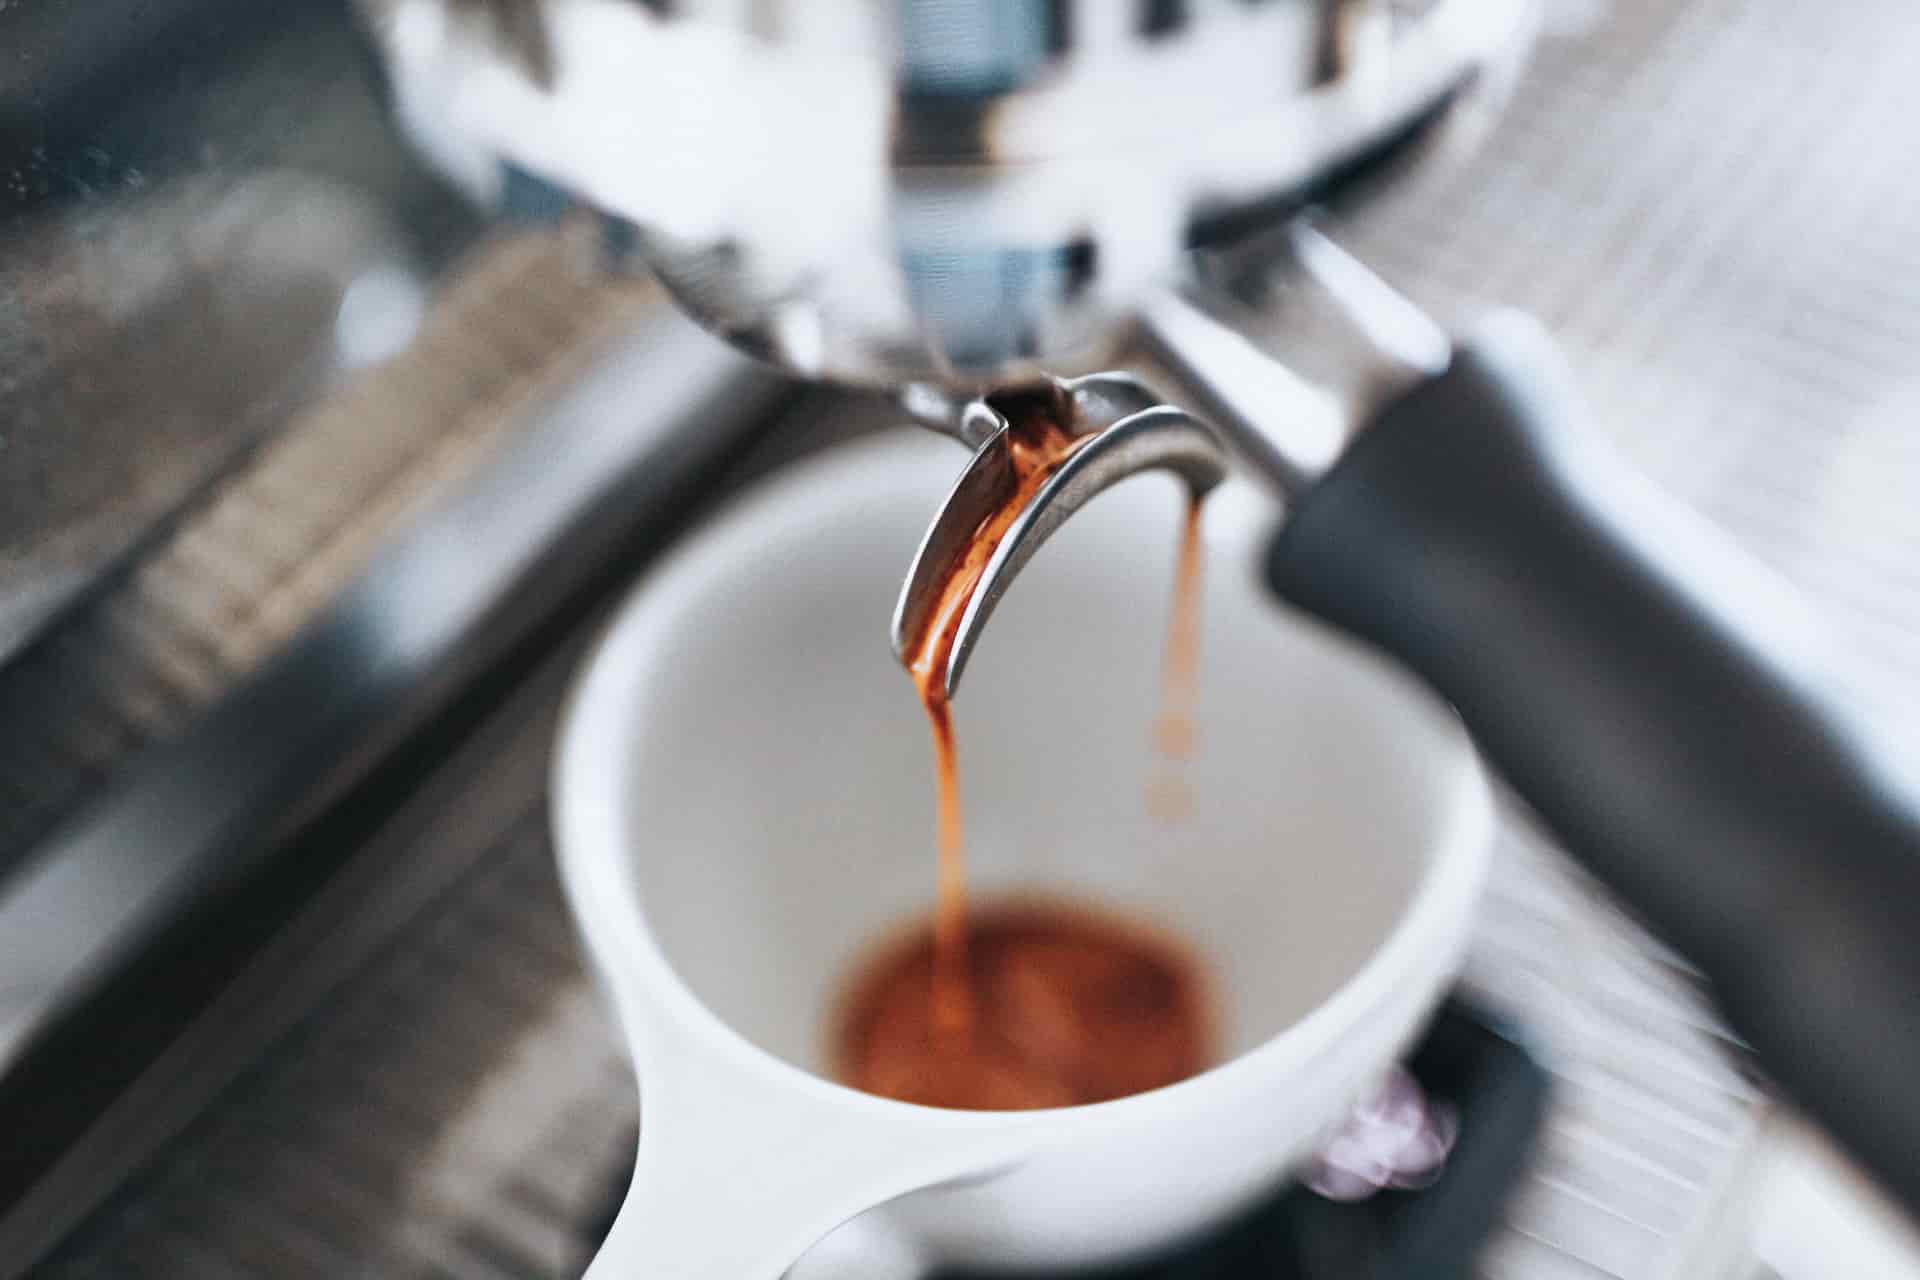 Best Espresso Machine Under $300: Here Are 8 Top Picks